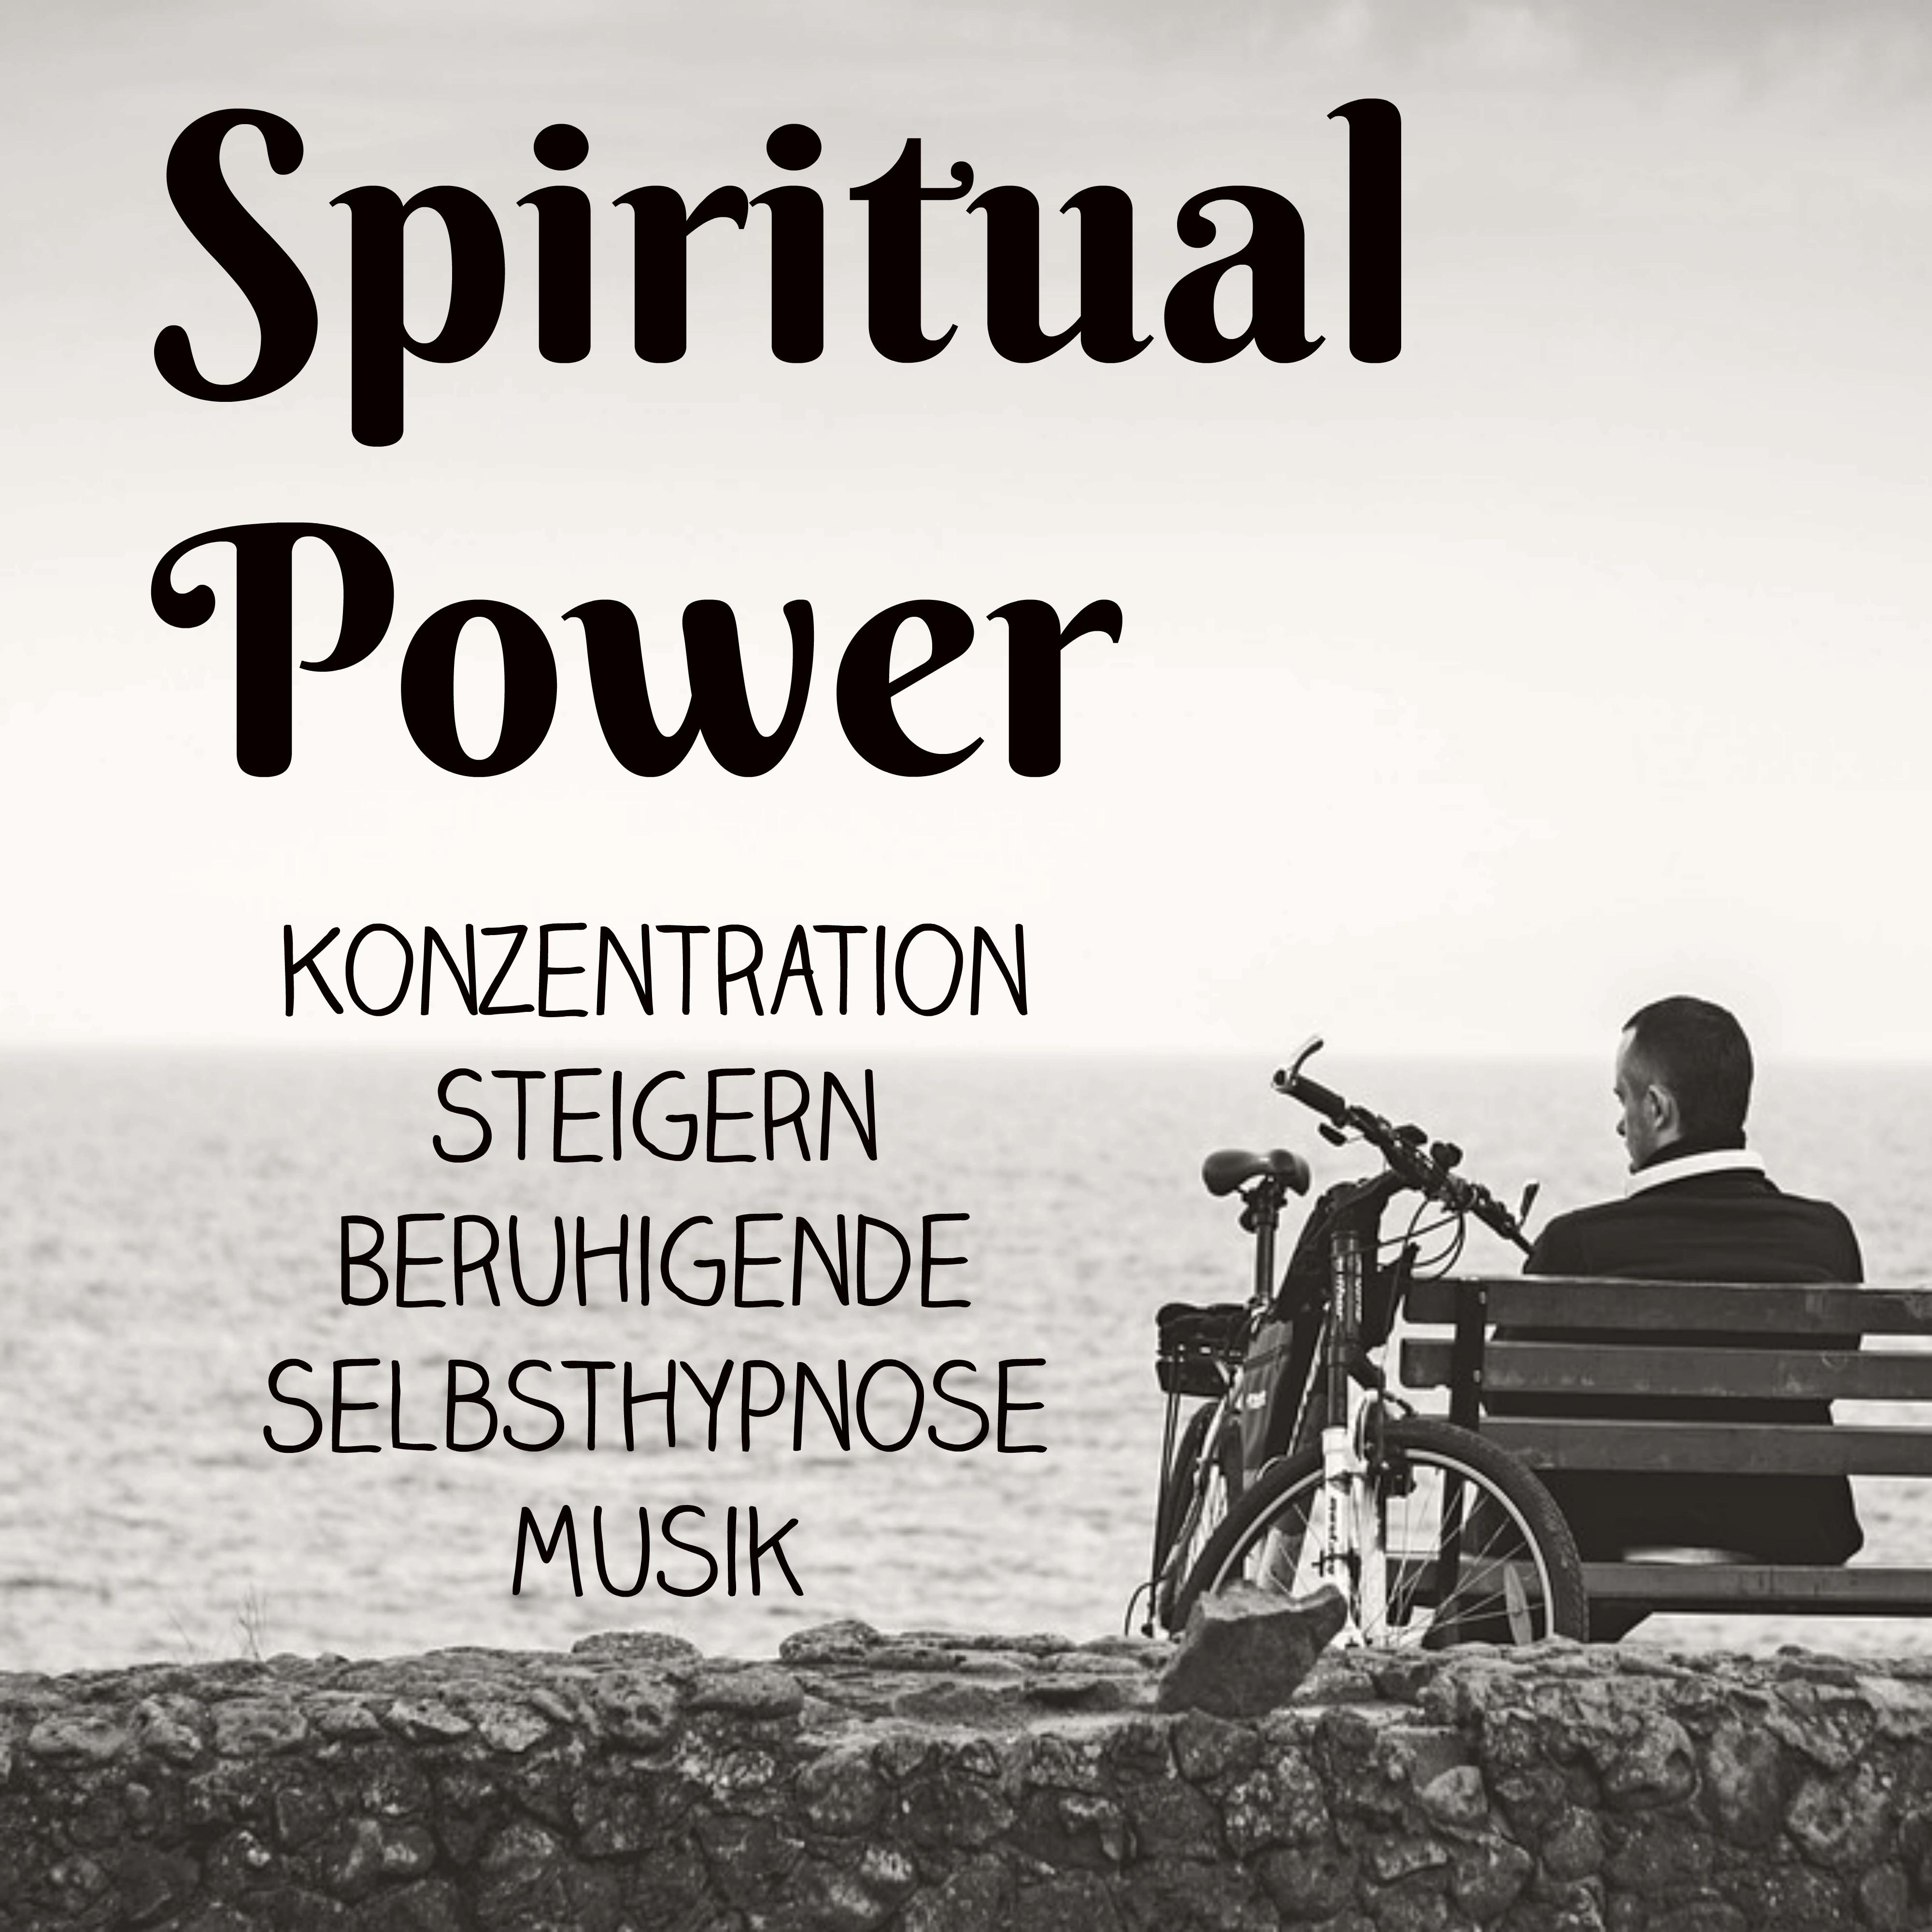 Spiritual Power  Konzentration Steigern Beruhigende Selbsthypnose Musik fü r Spirituelle Heilung Achtsamkeitsmeditation und Schlafzyklus